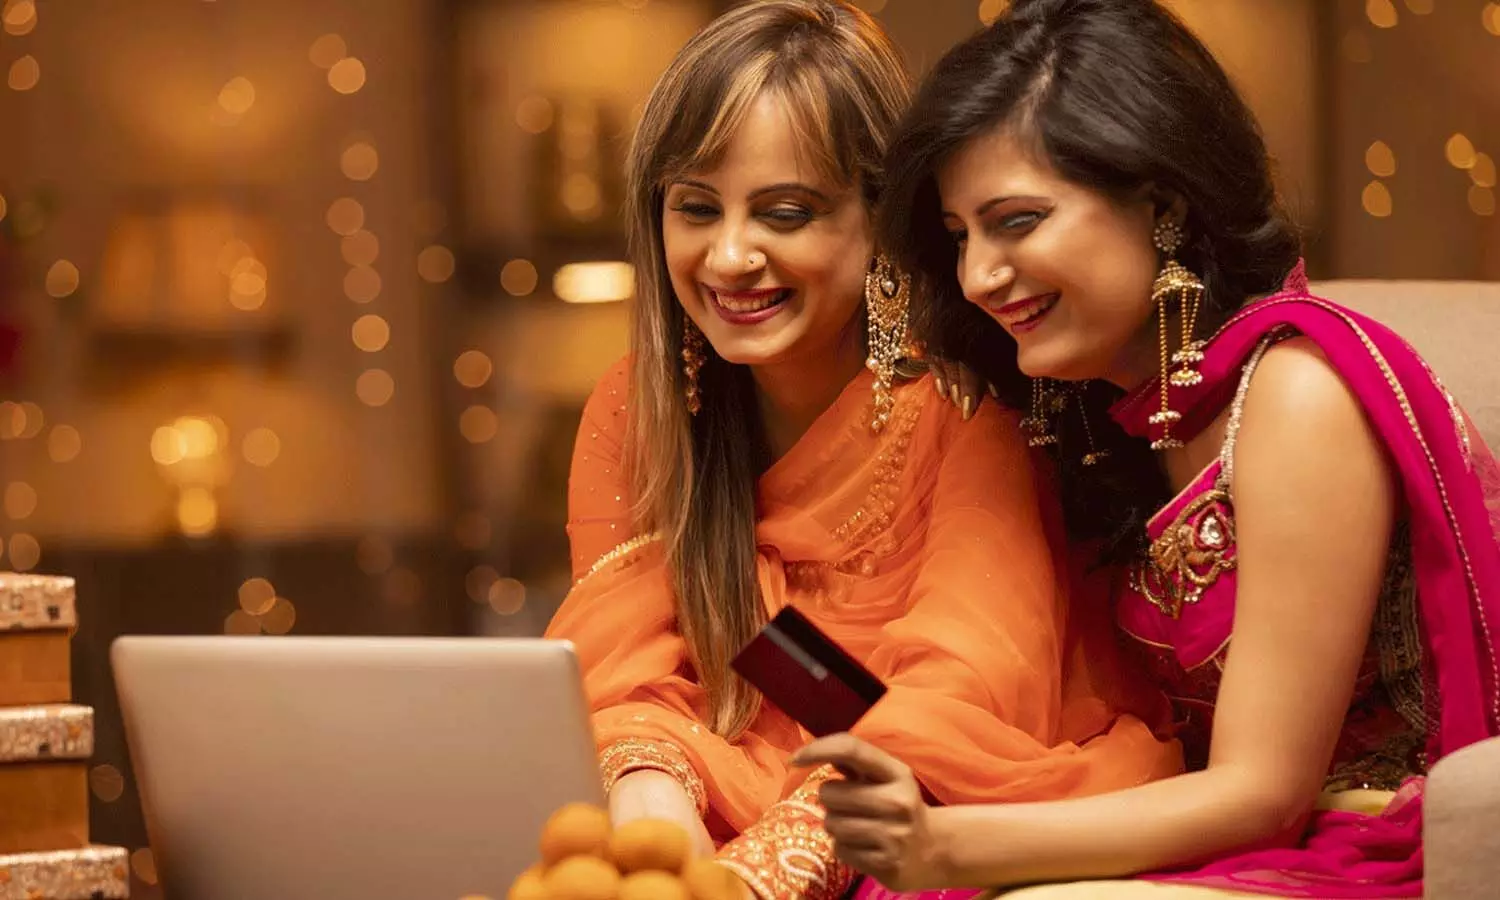 Credit Card Diwali Offers | దీపావ‌ళి పండుగ‌కు బ్యాంకుల బంప‌రాఫ‌ర్లు.. డిస్కౌంట్స్ టు క్యాష్‌బ్యాక్‌ల వ‌ర్షం.. ఇవీ డిటైల్స్‌..!